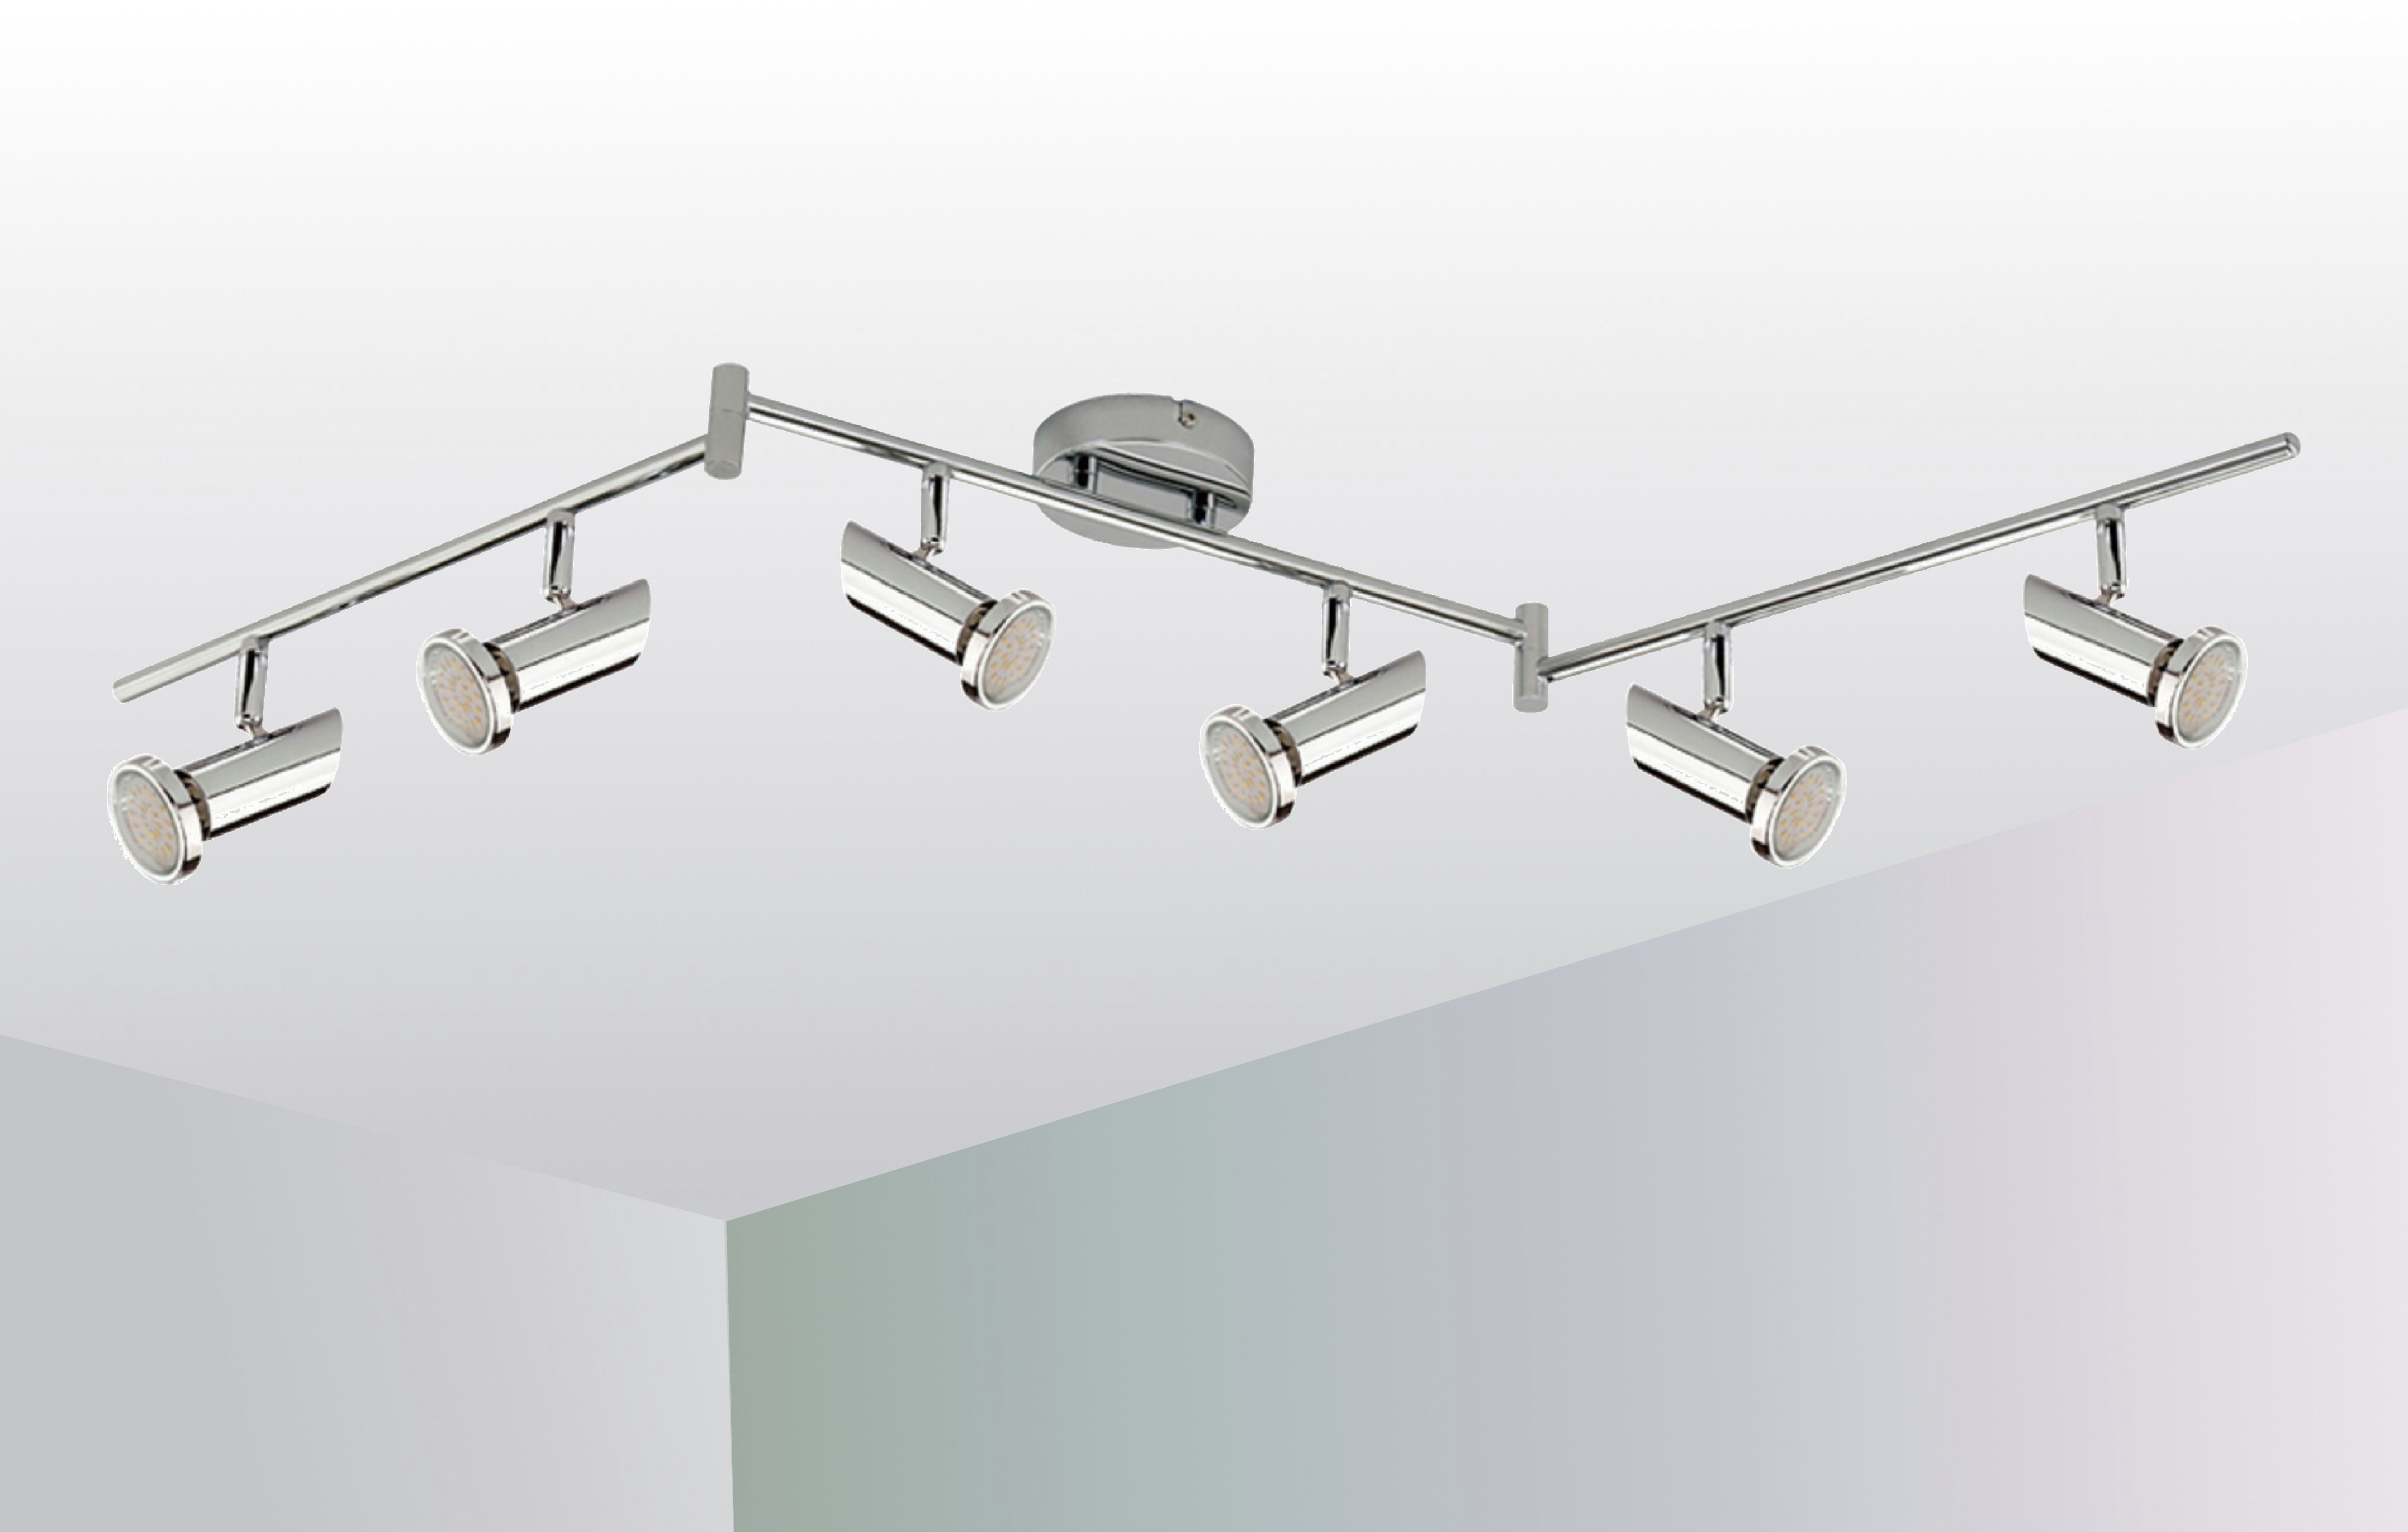 TRANGO LED Deckenspots, 6-flammig 2000-068 LED Wohnzimmer Lampe MIA in Chrom-Optik inkl. 6x 3 Watt GU10 LED Leuchtmittel - Deckenlampe - Deckenstrahler - Deckenleuchte, Schlafzimmer Leuchte schwenkbar und drehbar